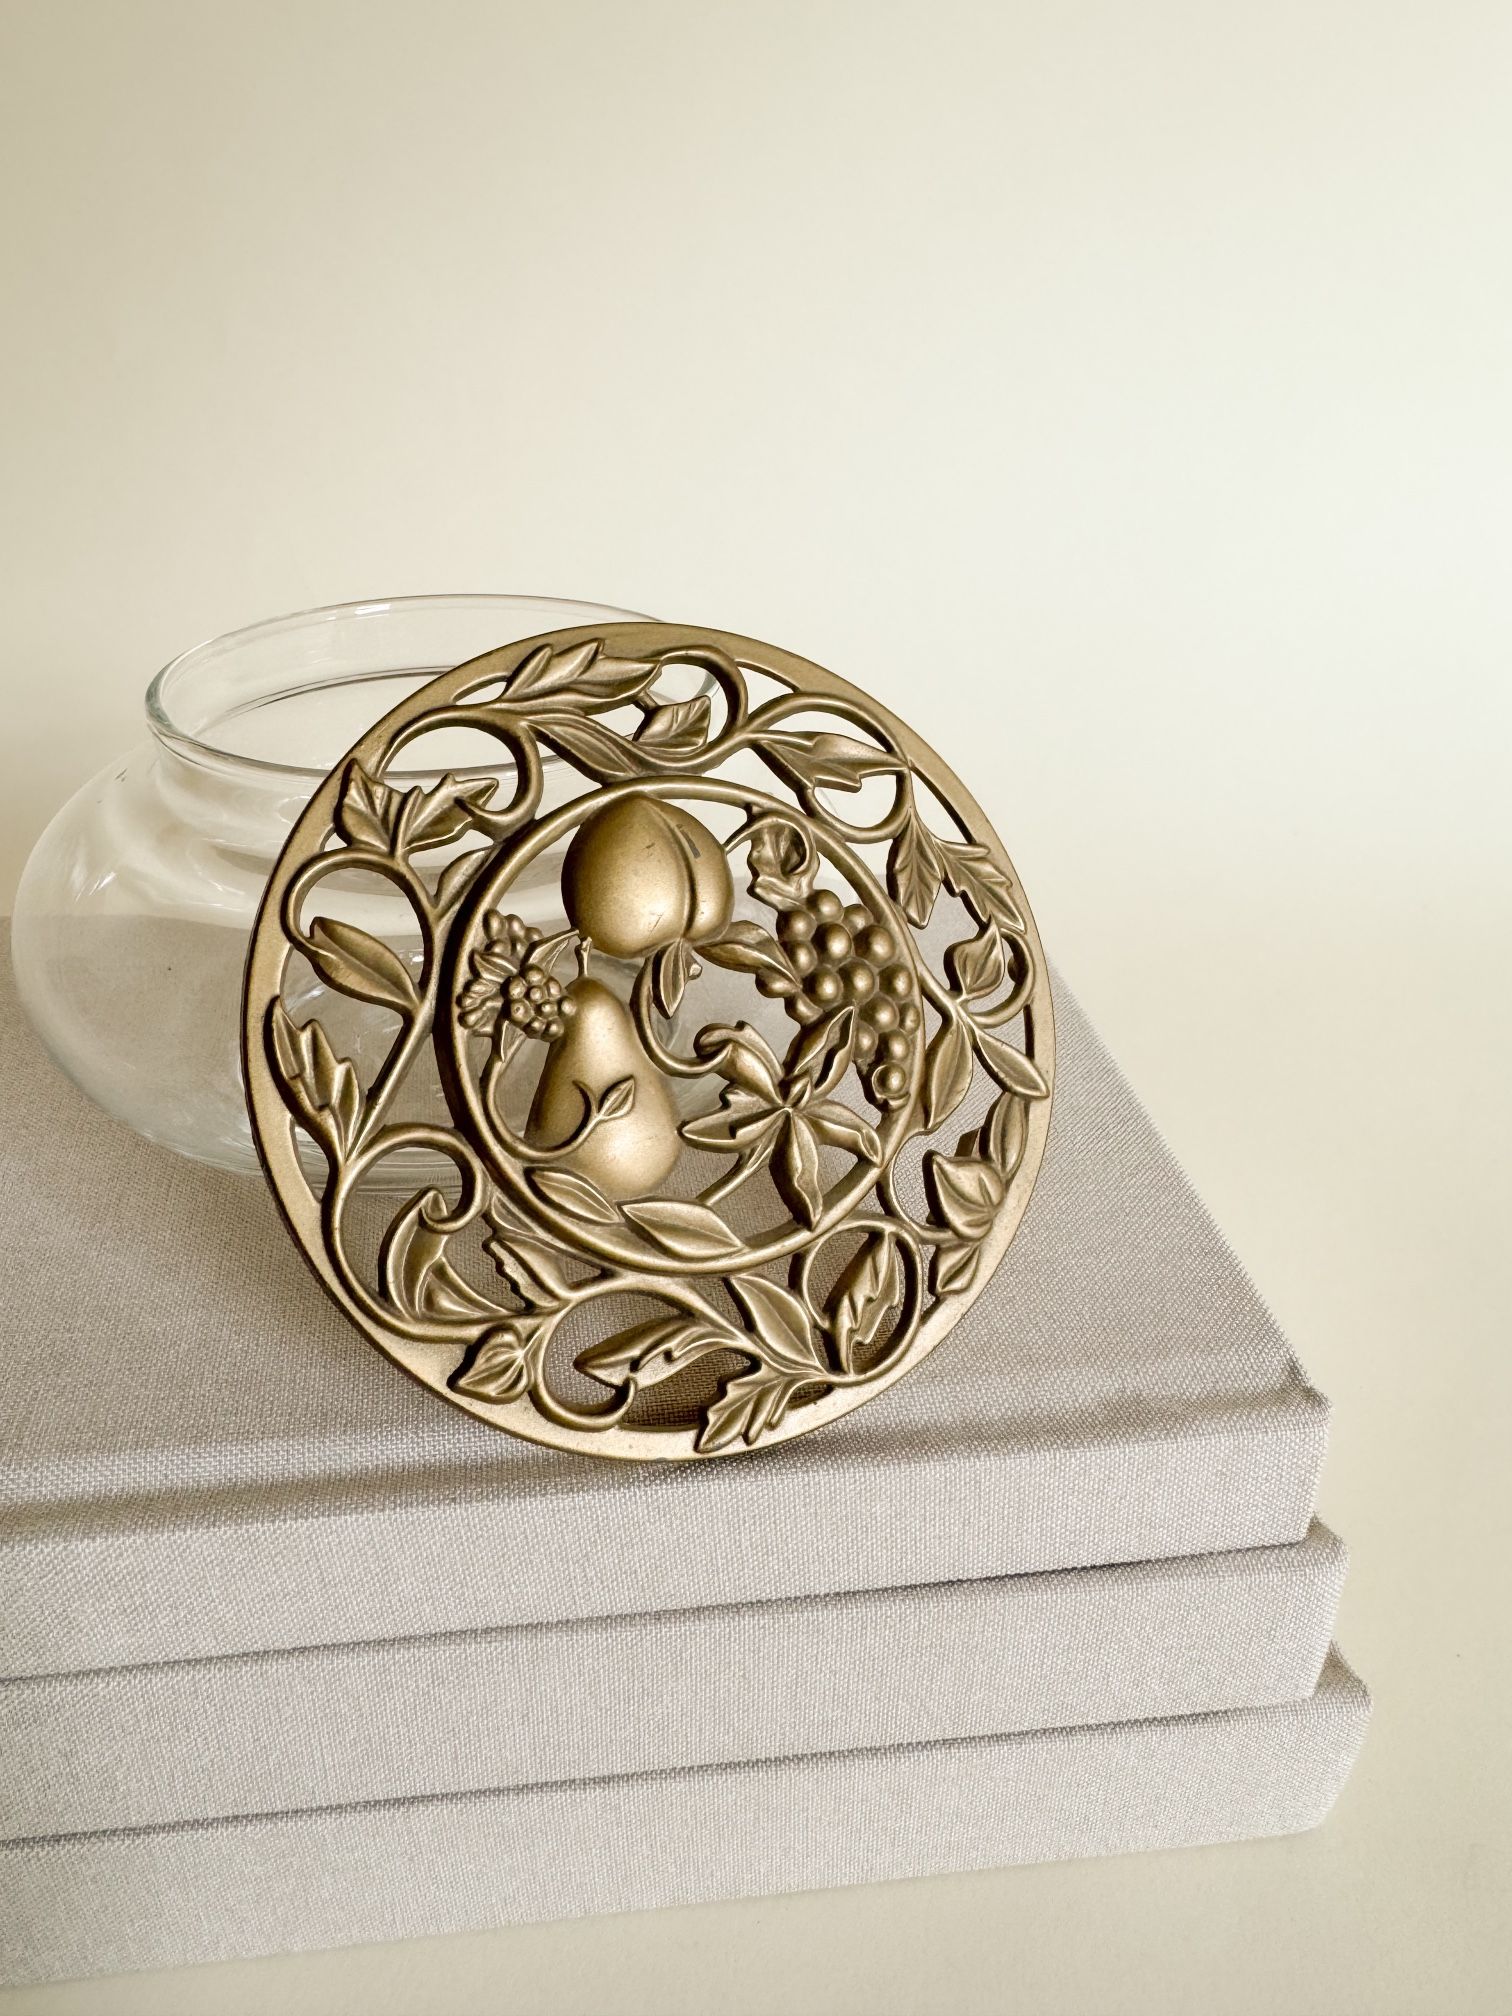 Glass Trinket Bowl with Brass Lid